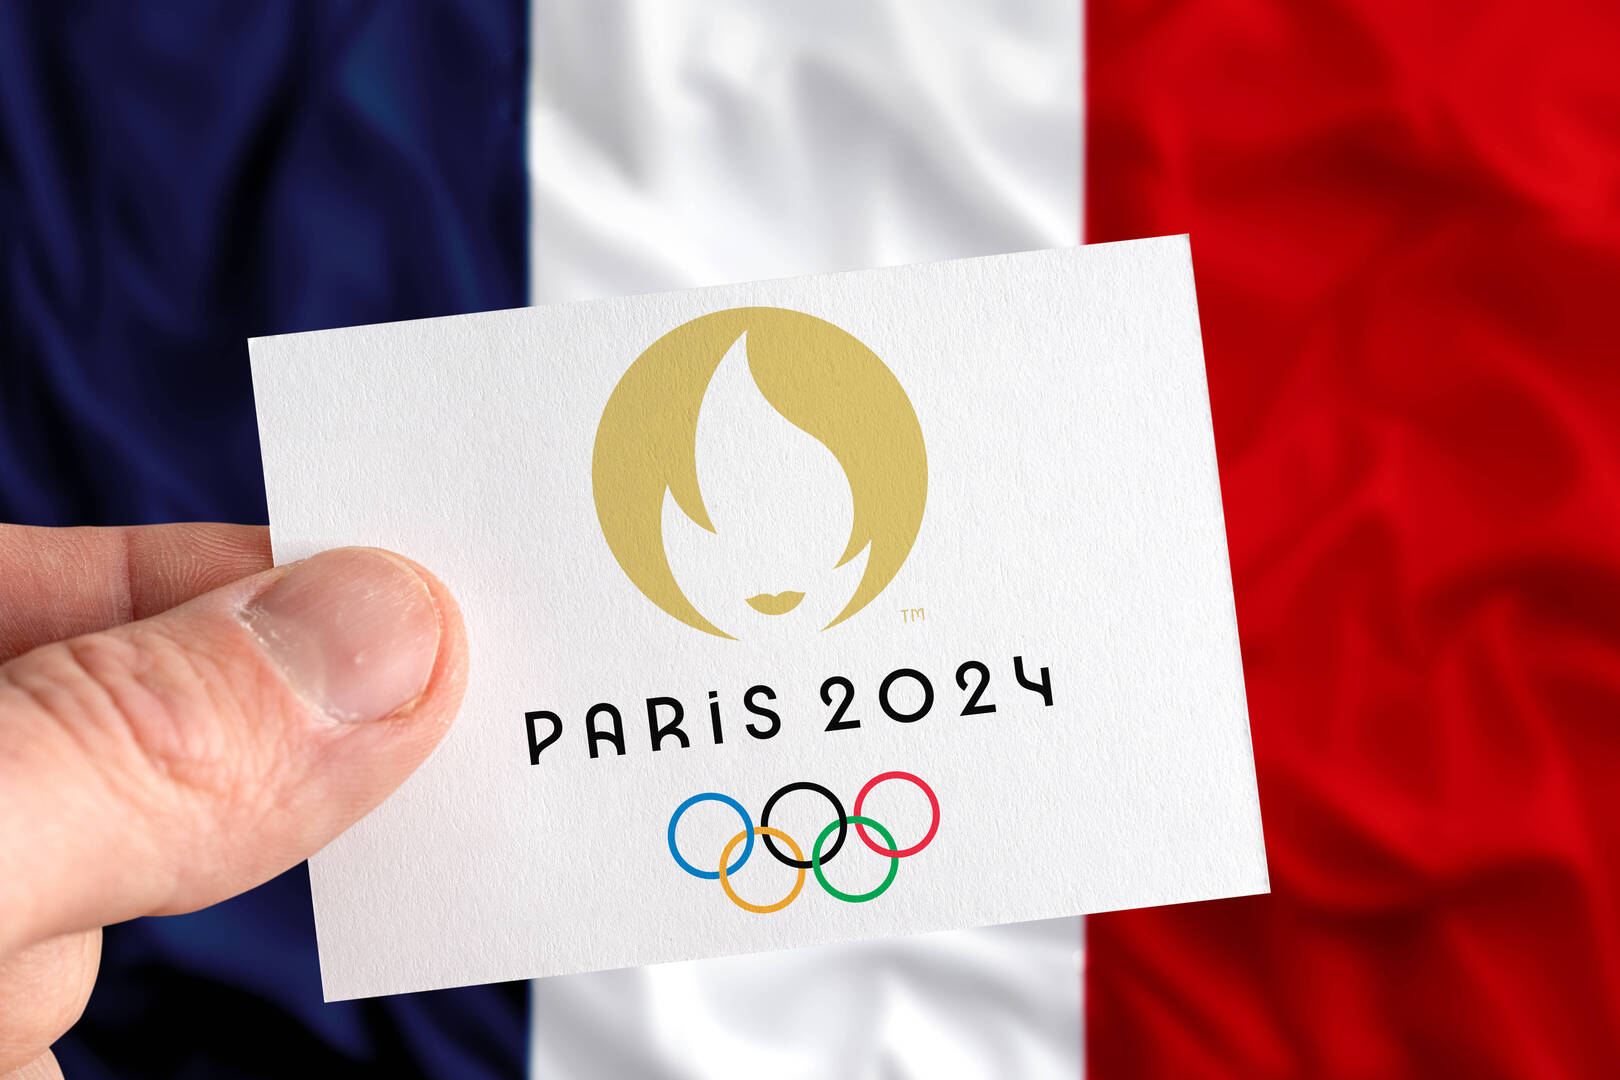 لا تفوت أي لحظة من الإثارة دون تكلفة.. القنوات المجانية المفتوحة لنقل أولمبياد باريس 2024 وموعد حفل الافتتاح